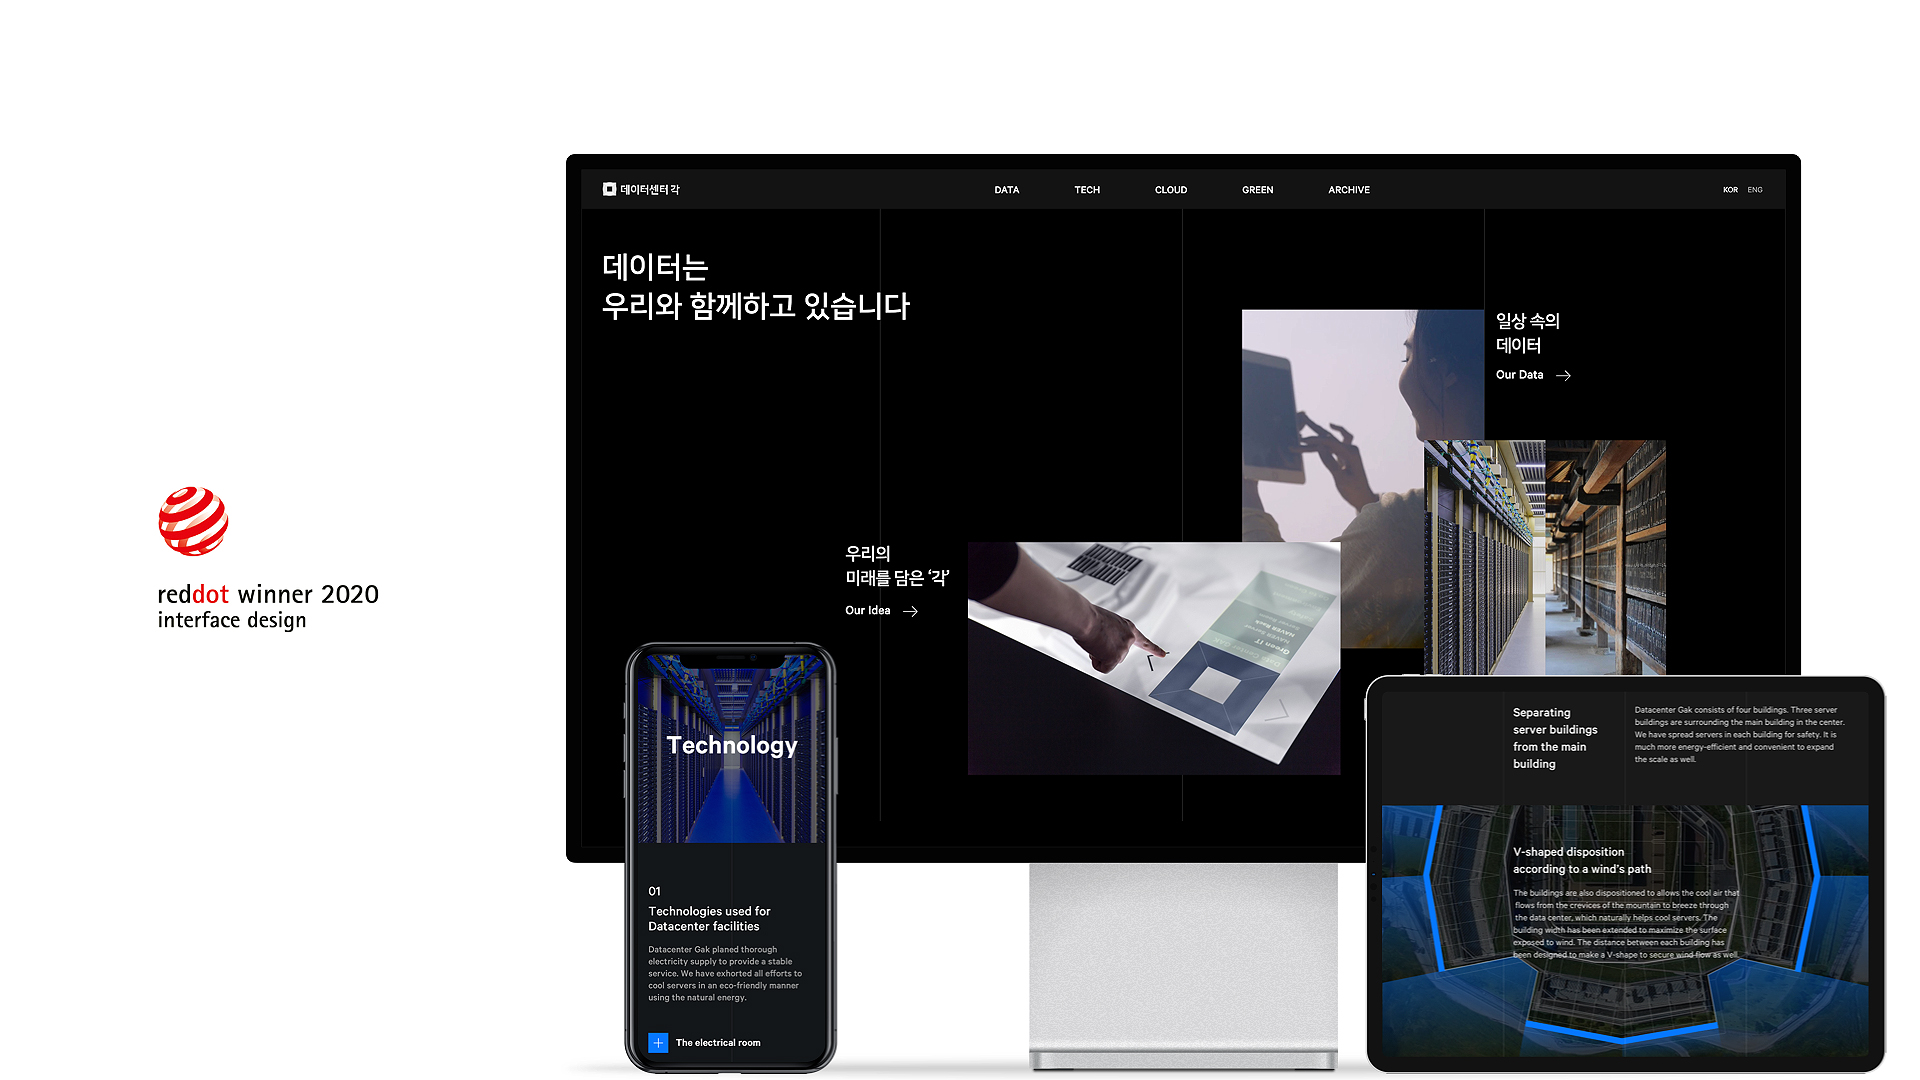 〔ANN의 뉴스 포커스〕 네이버, '2020 레드닷 디자인 어워드' 5개 부문에 본상 수상